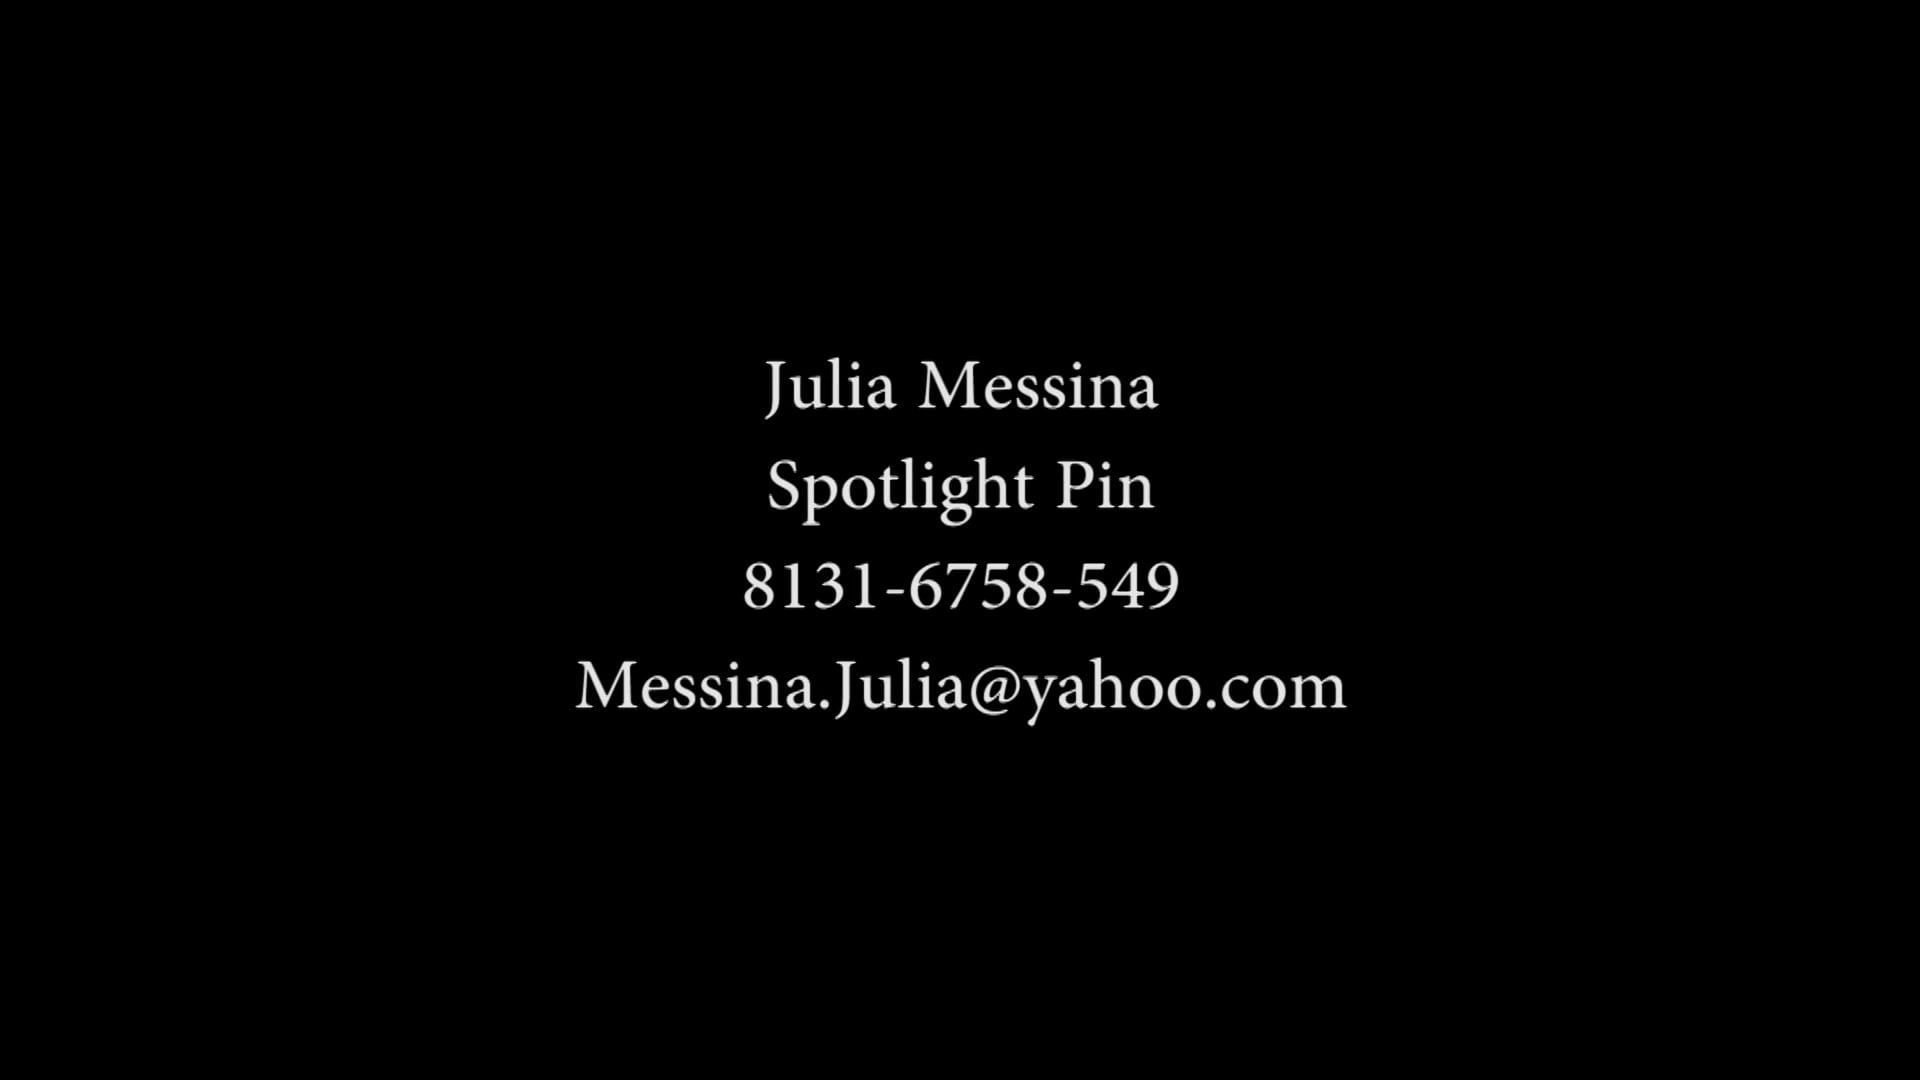 Julia Messina_monologue